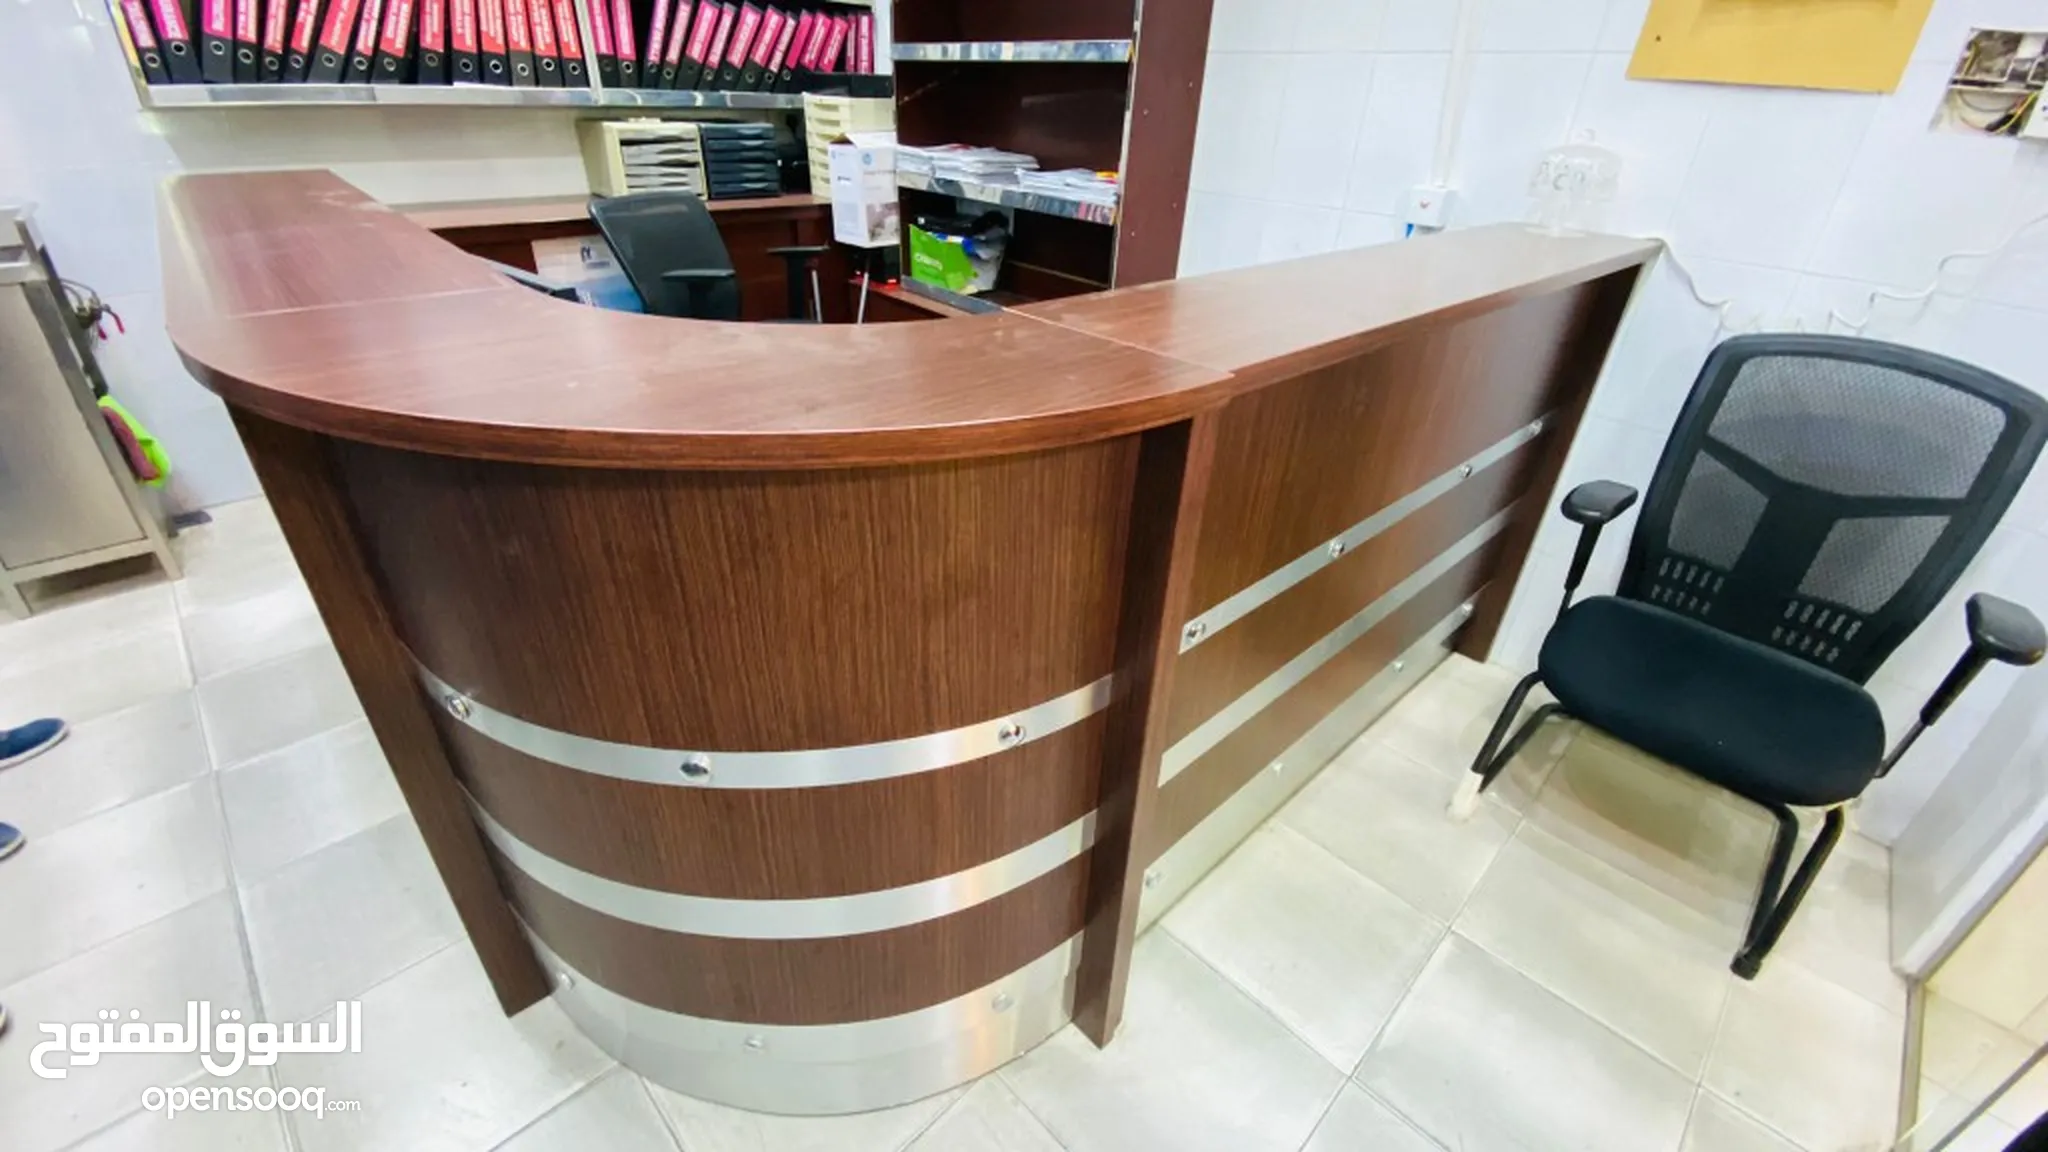 اثاث مكاتب للبيع : اثاث مكتبي : طاولات وكراسي : ارخص الاسعار في البحرين